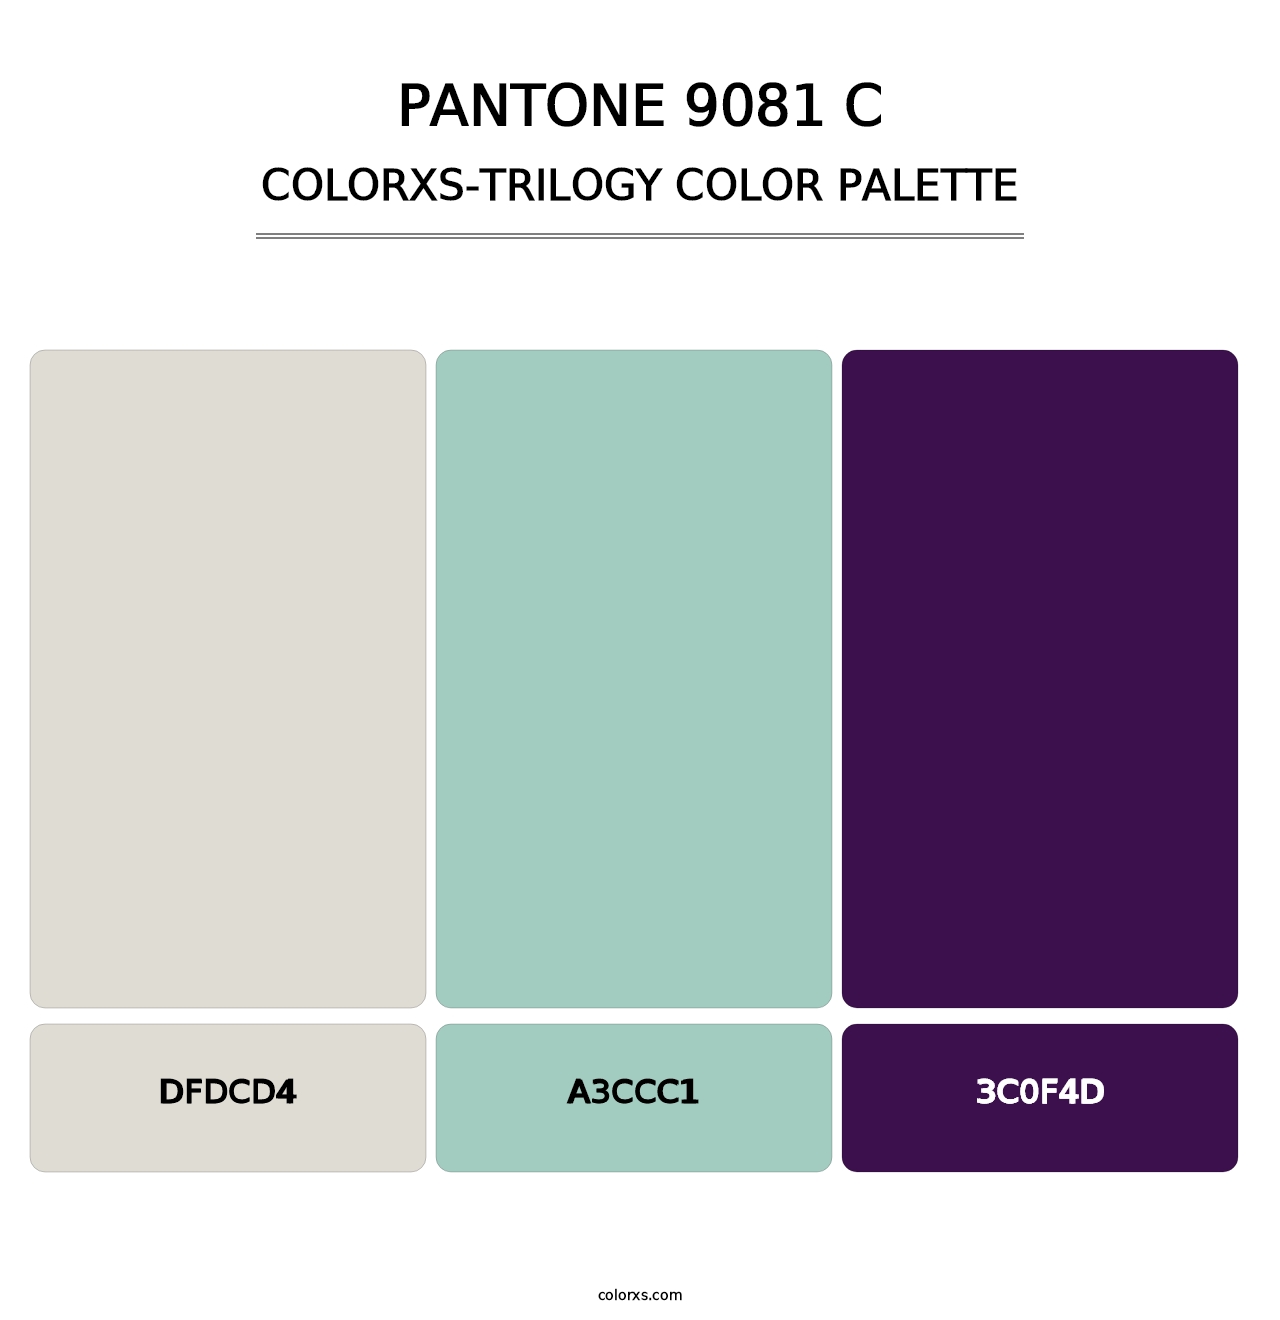 PANTONE 9081 C - Colorxs Trilogy Palette